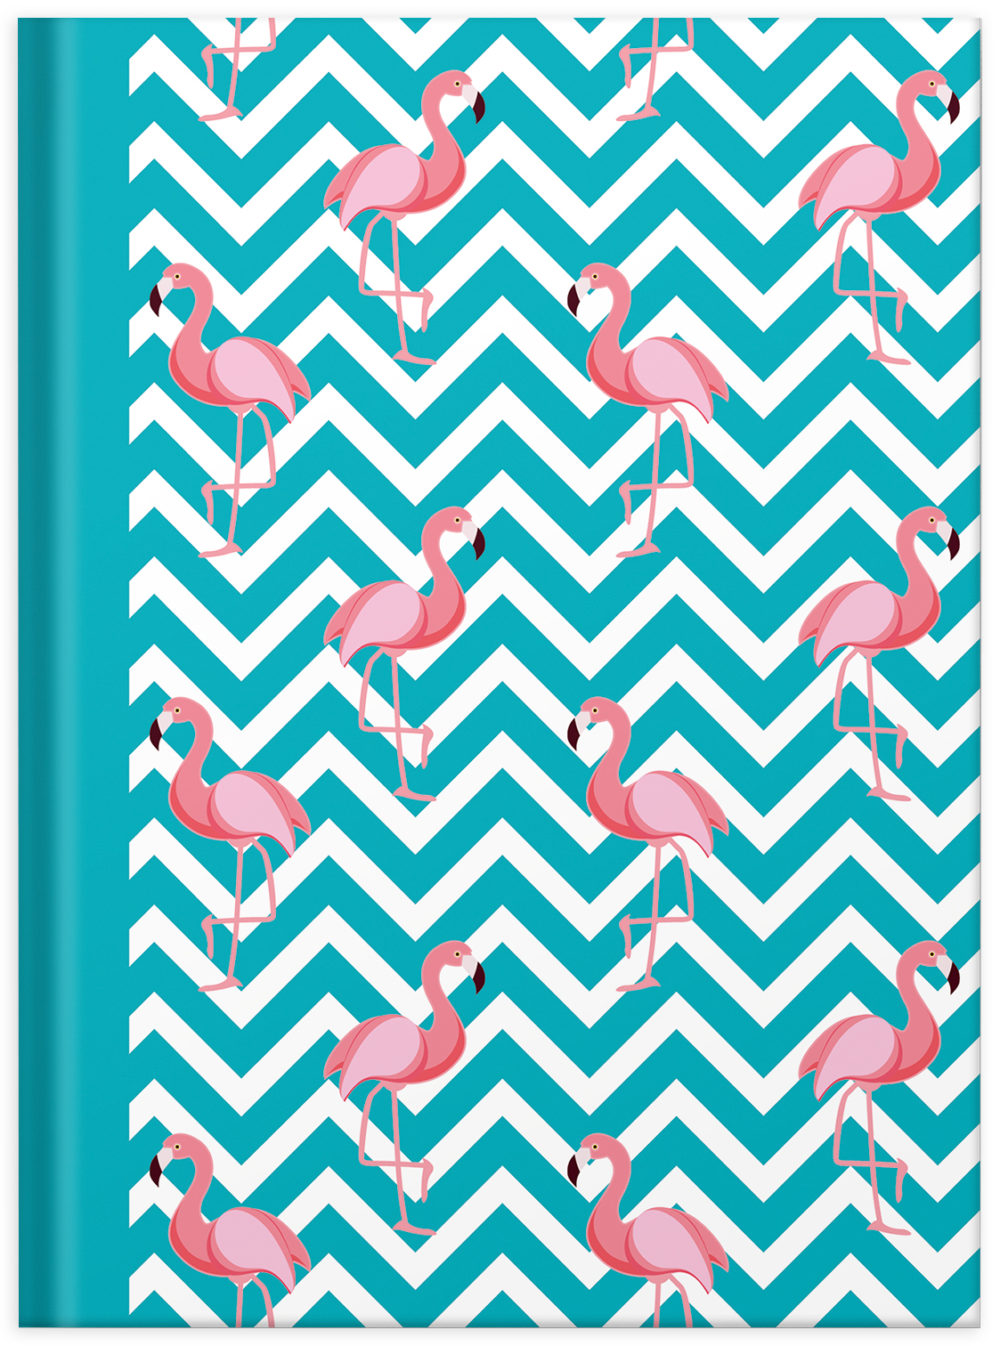 Notizbuch "Flamingo blau" Vorderansicht mit Flamingos und Muster